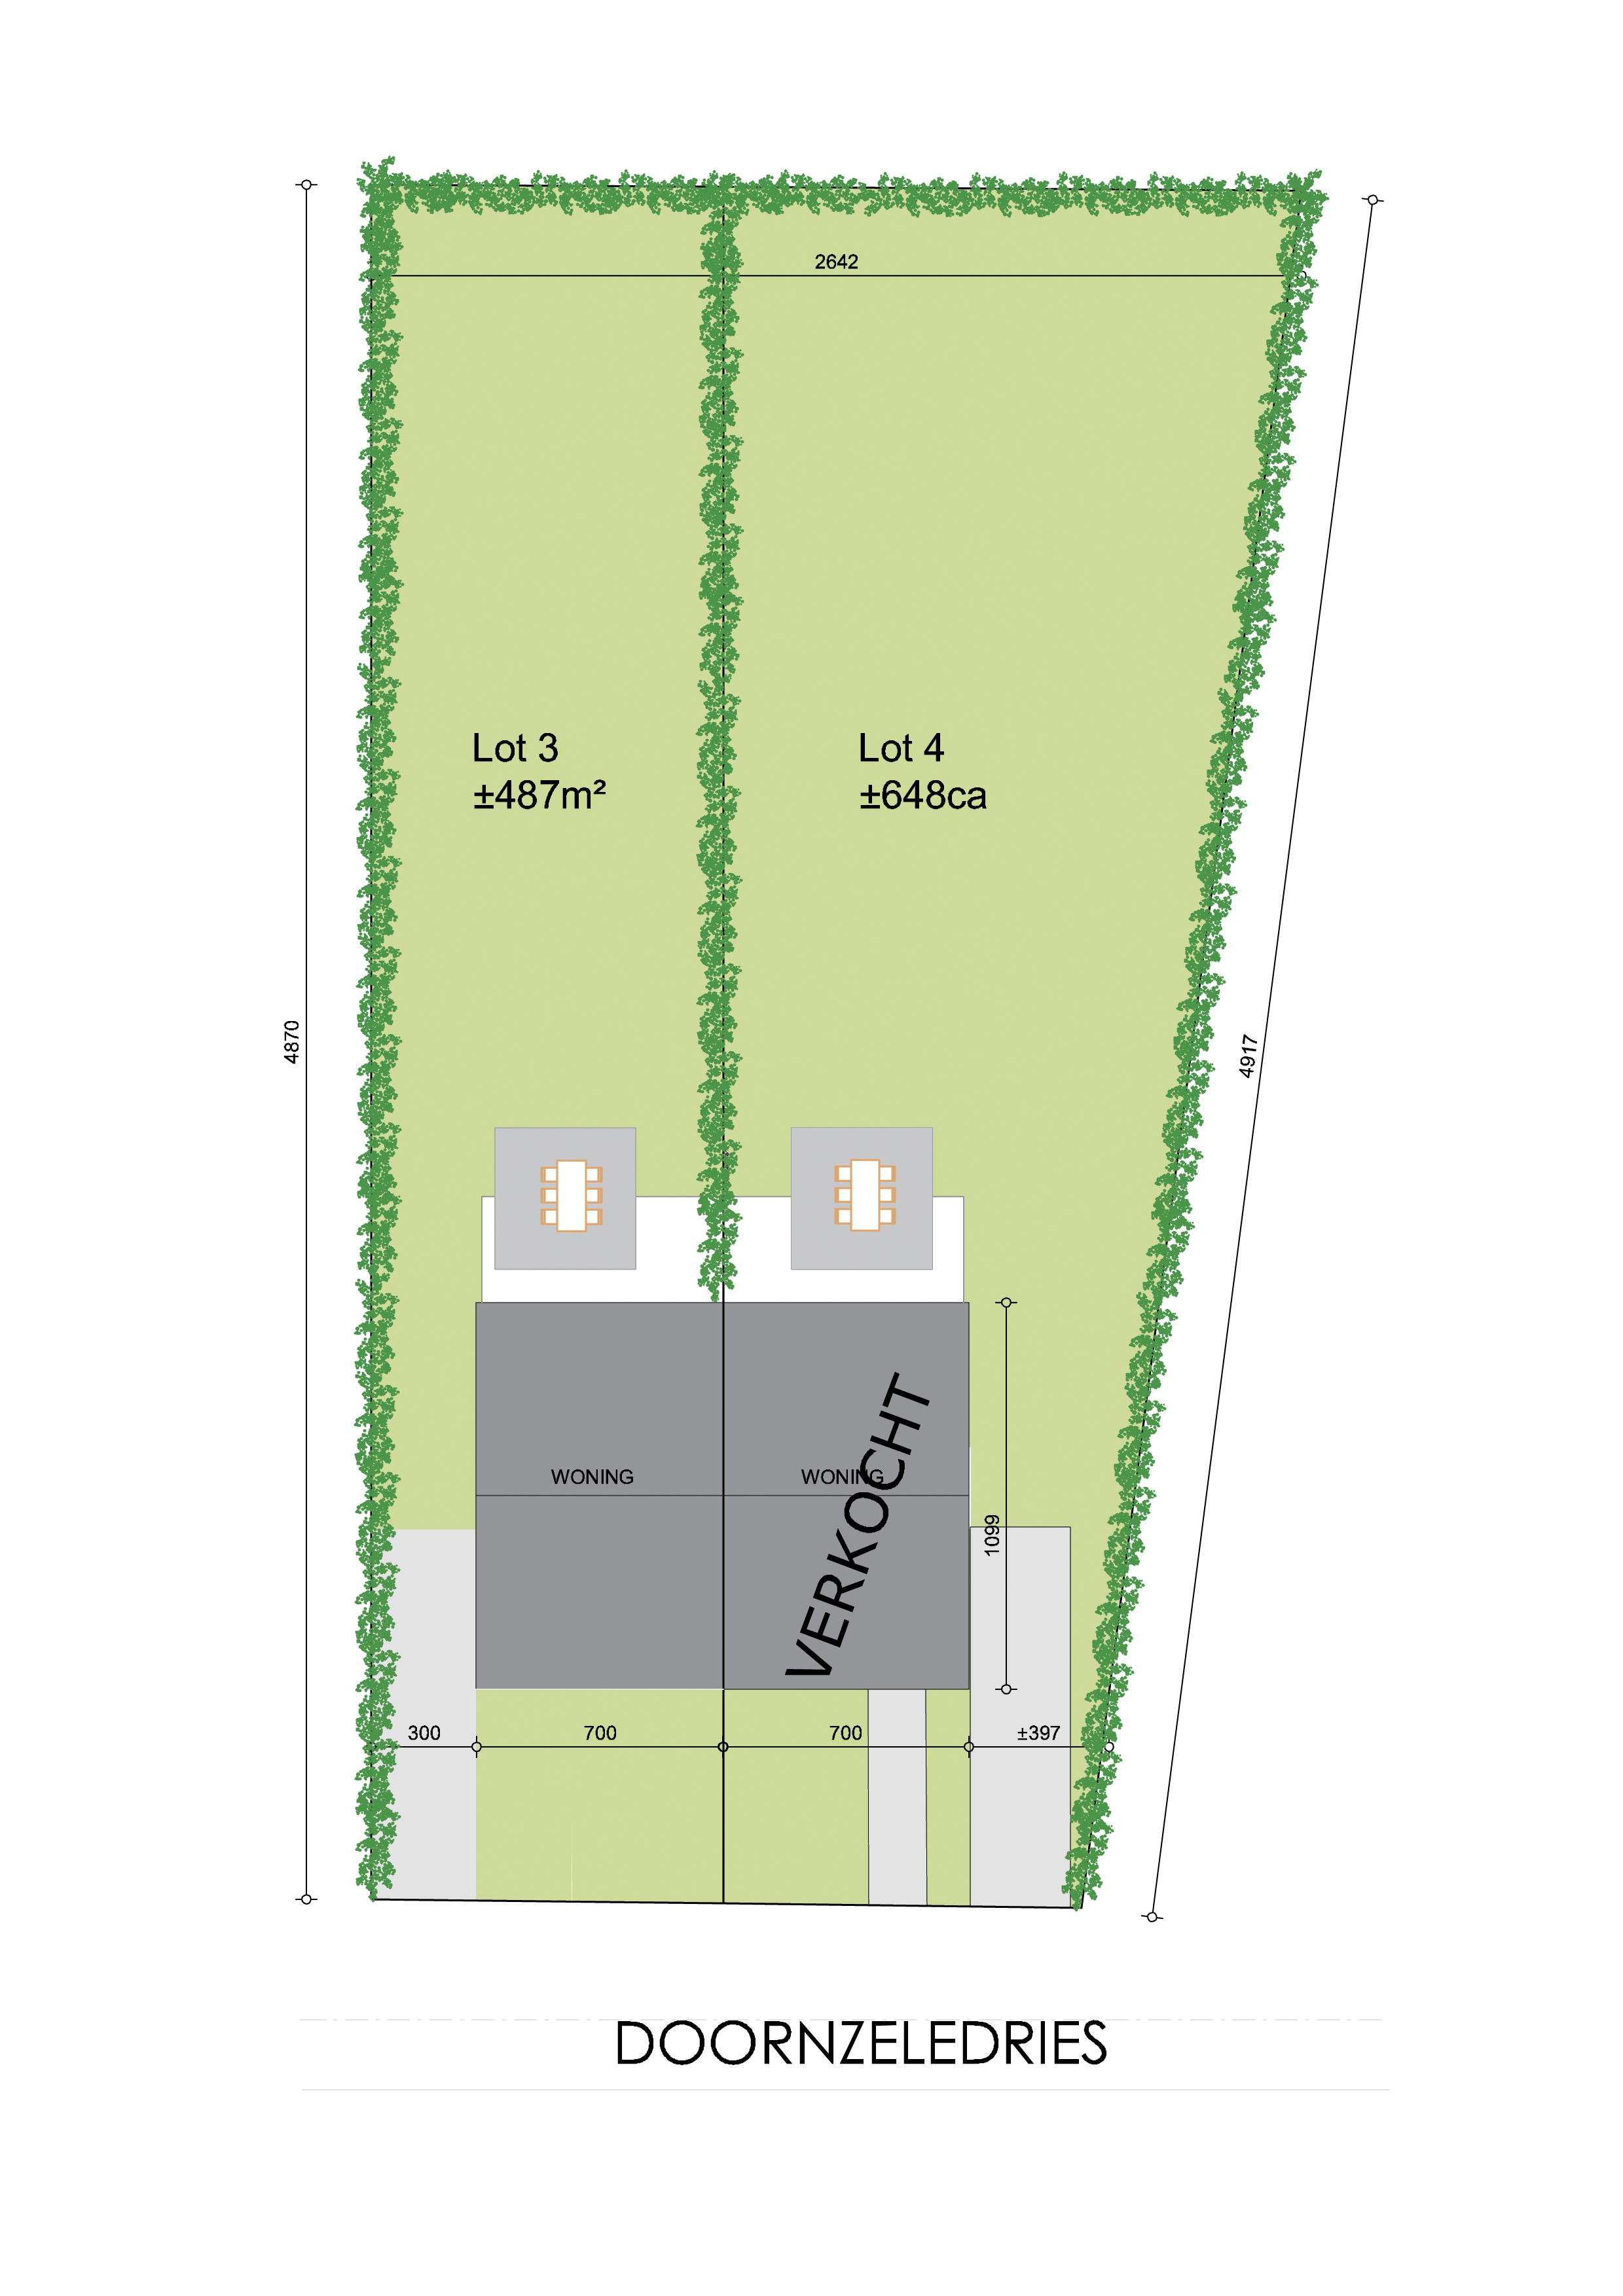 Nieuwbouwproject Evergem (9940) - Doornzeledries: Half open bebouwing (lot 3)